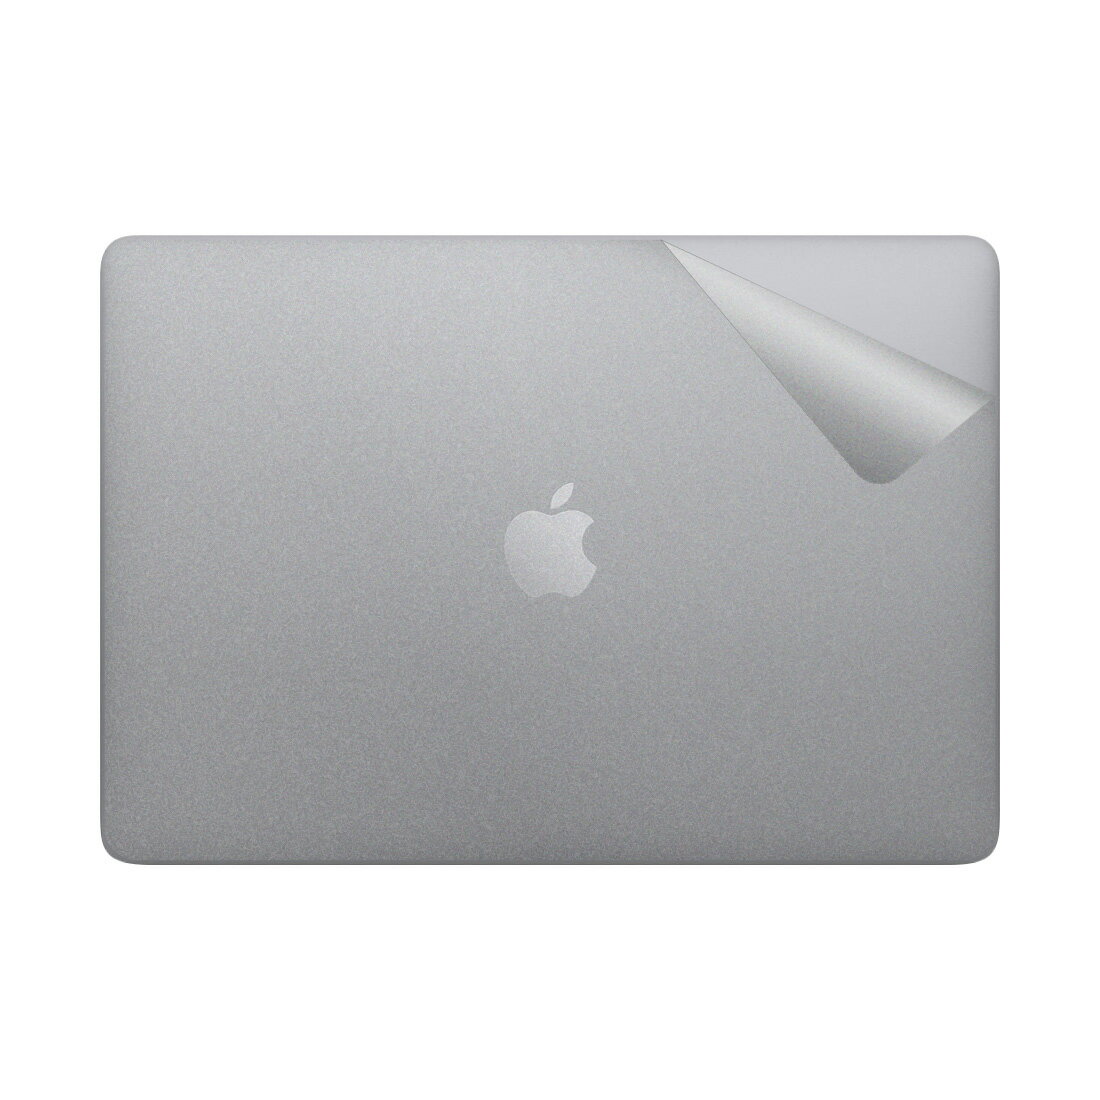 スキンシール MacBook Air 13インチ (2020年/2019年/2018年) 【透明・すりガラス調】